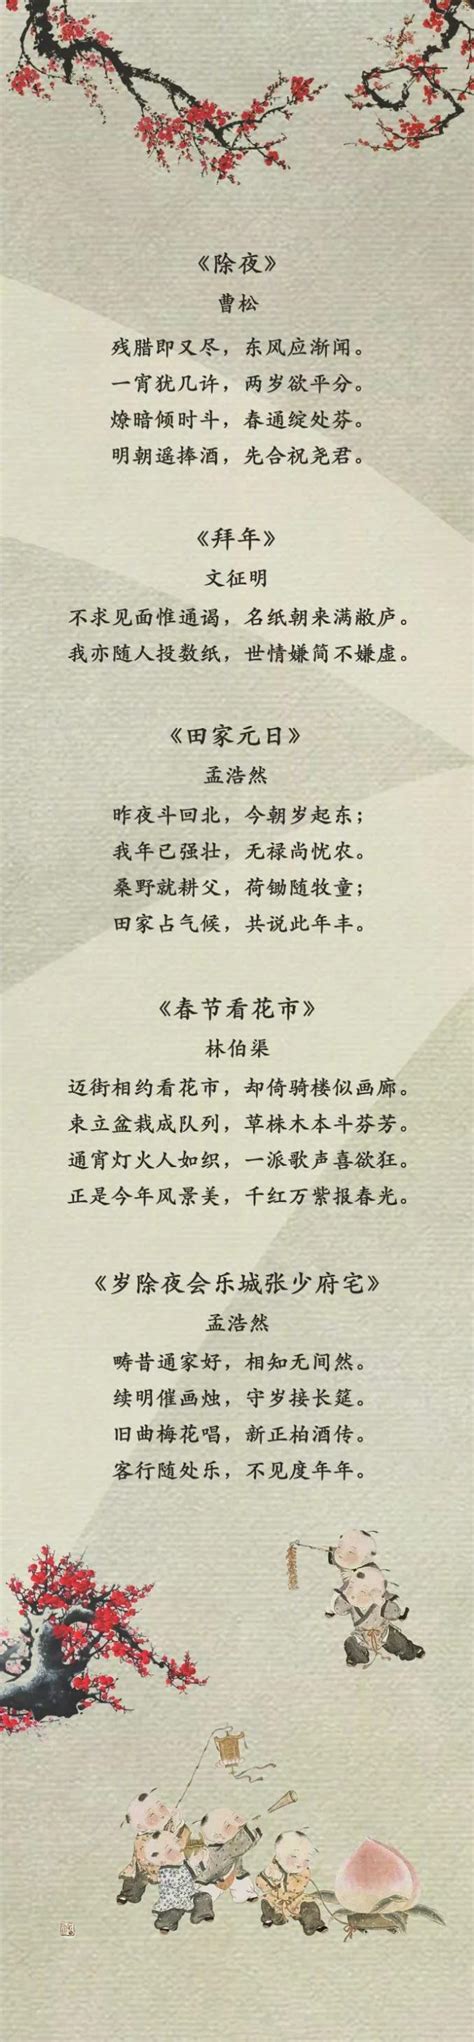 中国年诗歌现代诗